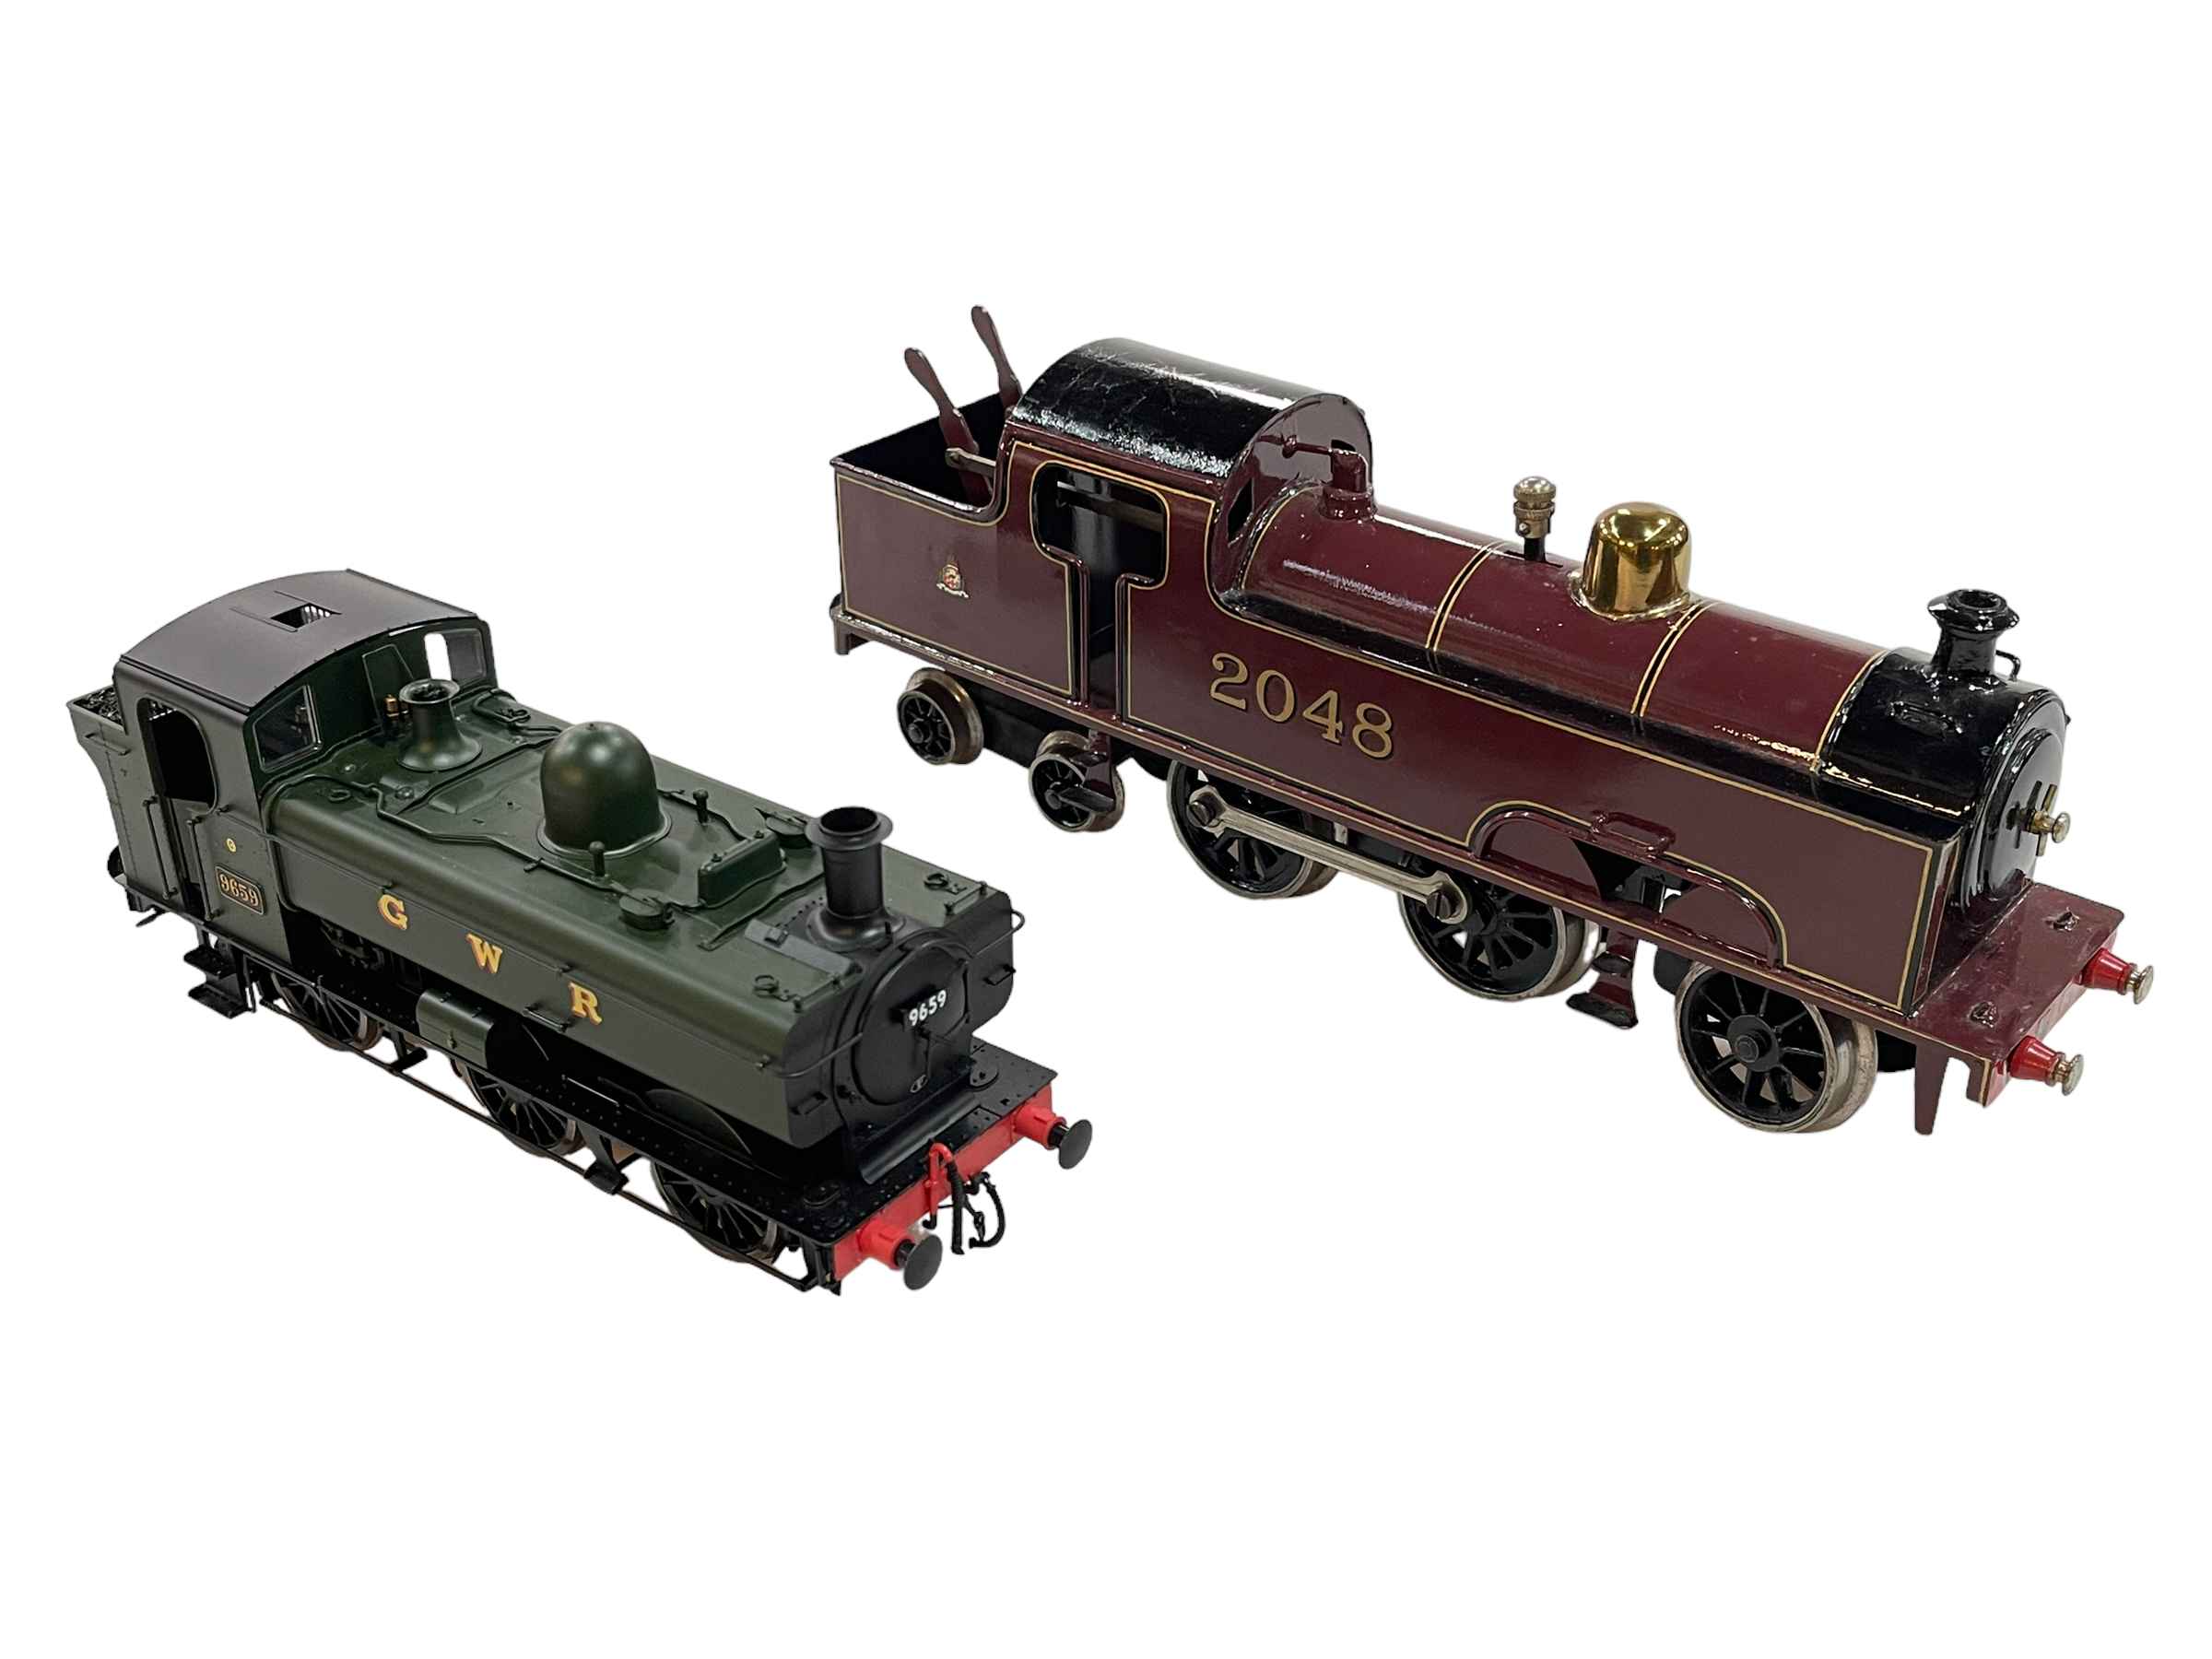 Clockwork 'O' Gauge model steam Loco and GWR model of steam Loco (2).